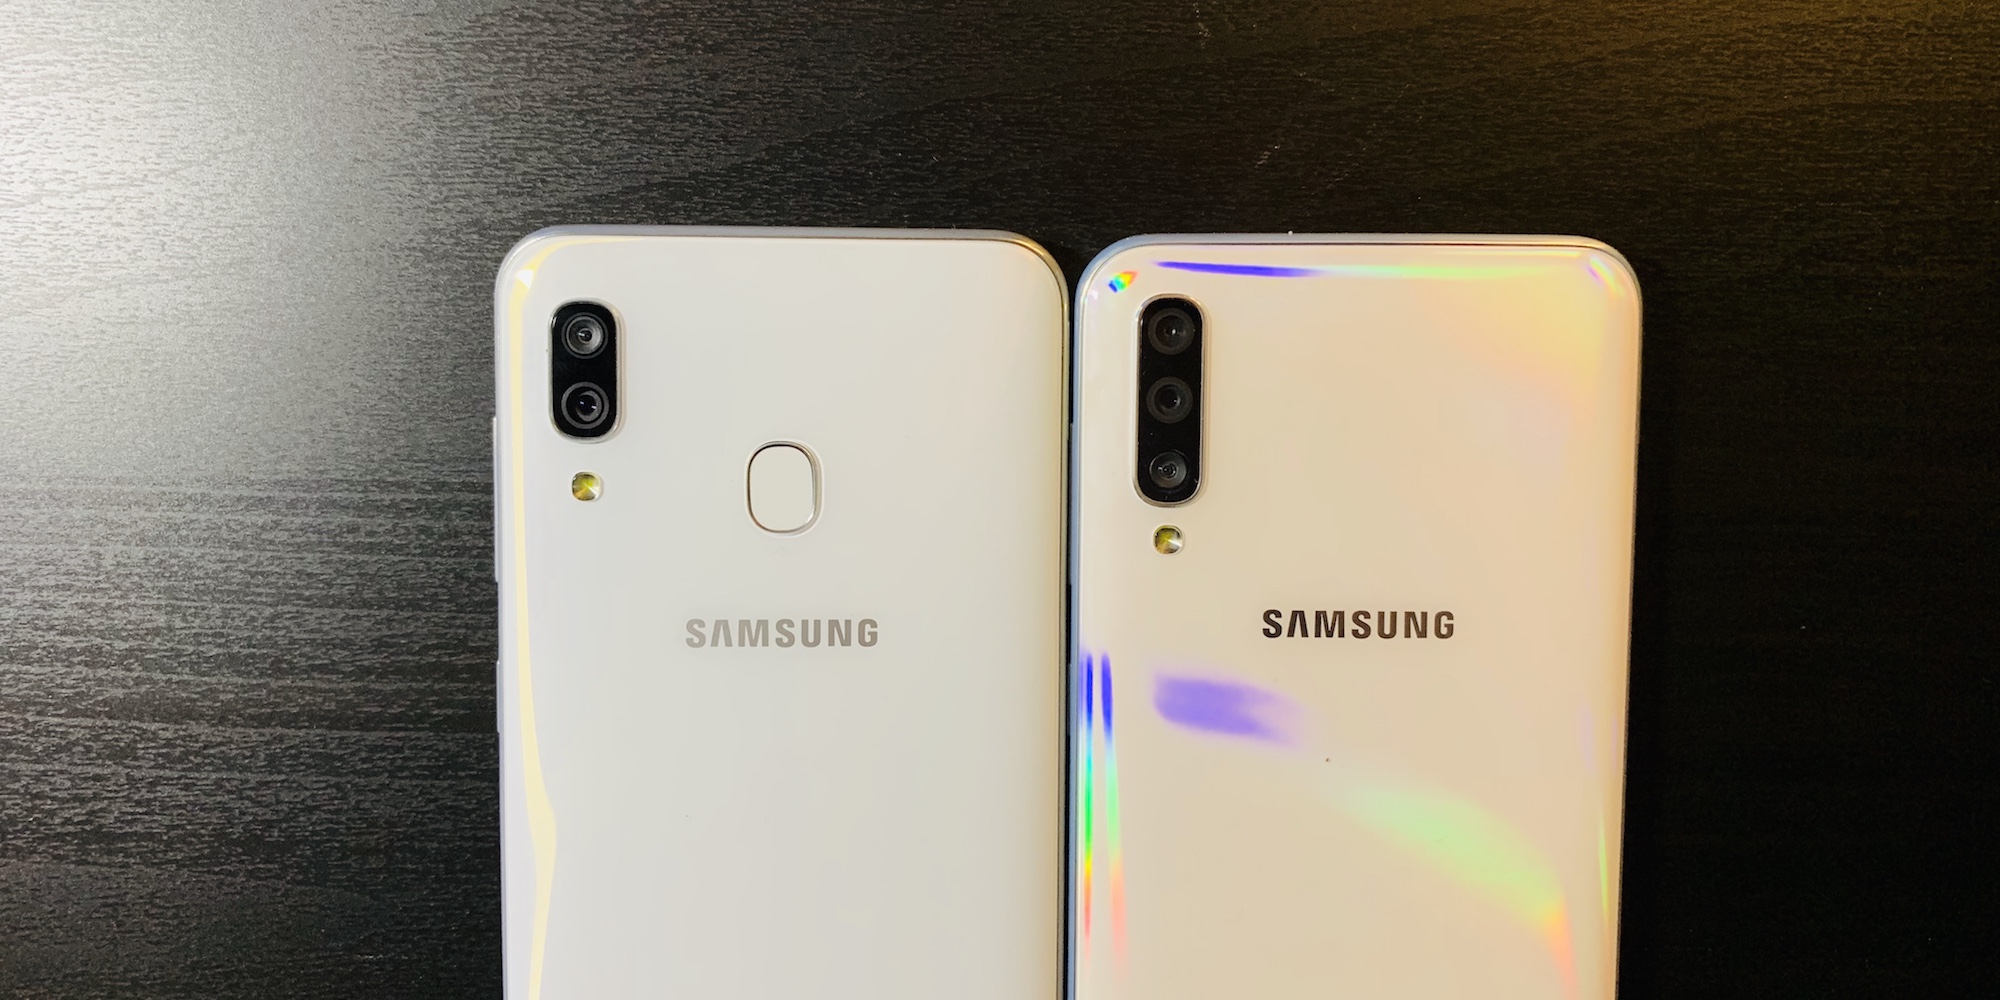 Самсунг а56 цена. Самсунг галакси а 50. Samsung Galaxy a30. Самсунг галакси а50 белый. Samsung Galaxy a50 Price.